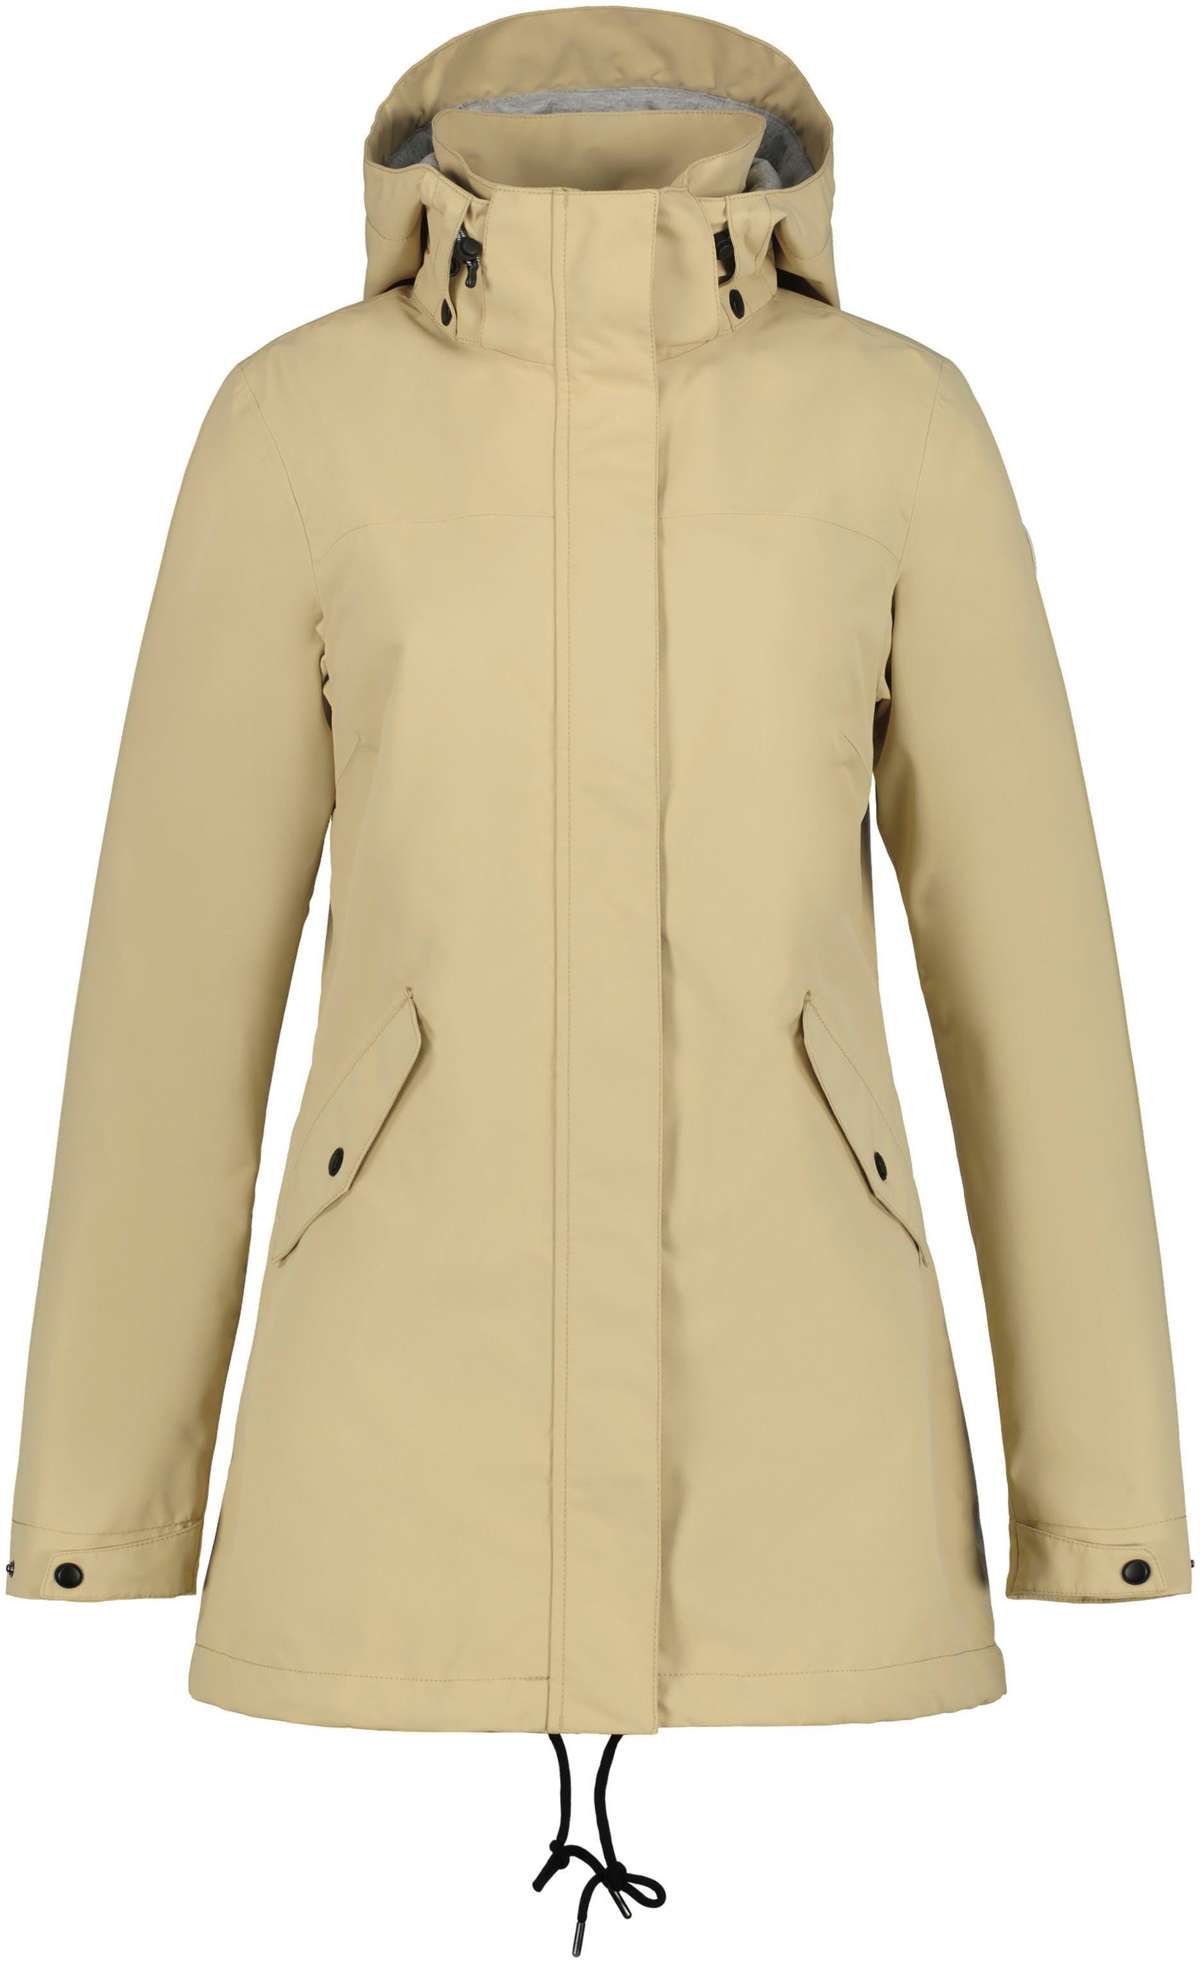 Функциональная куртка D FUNCTIONAL JACKET ADDIS Ветрозащитная, водонепроницаемая и дышащая.